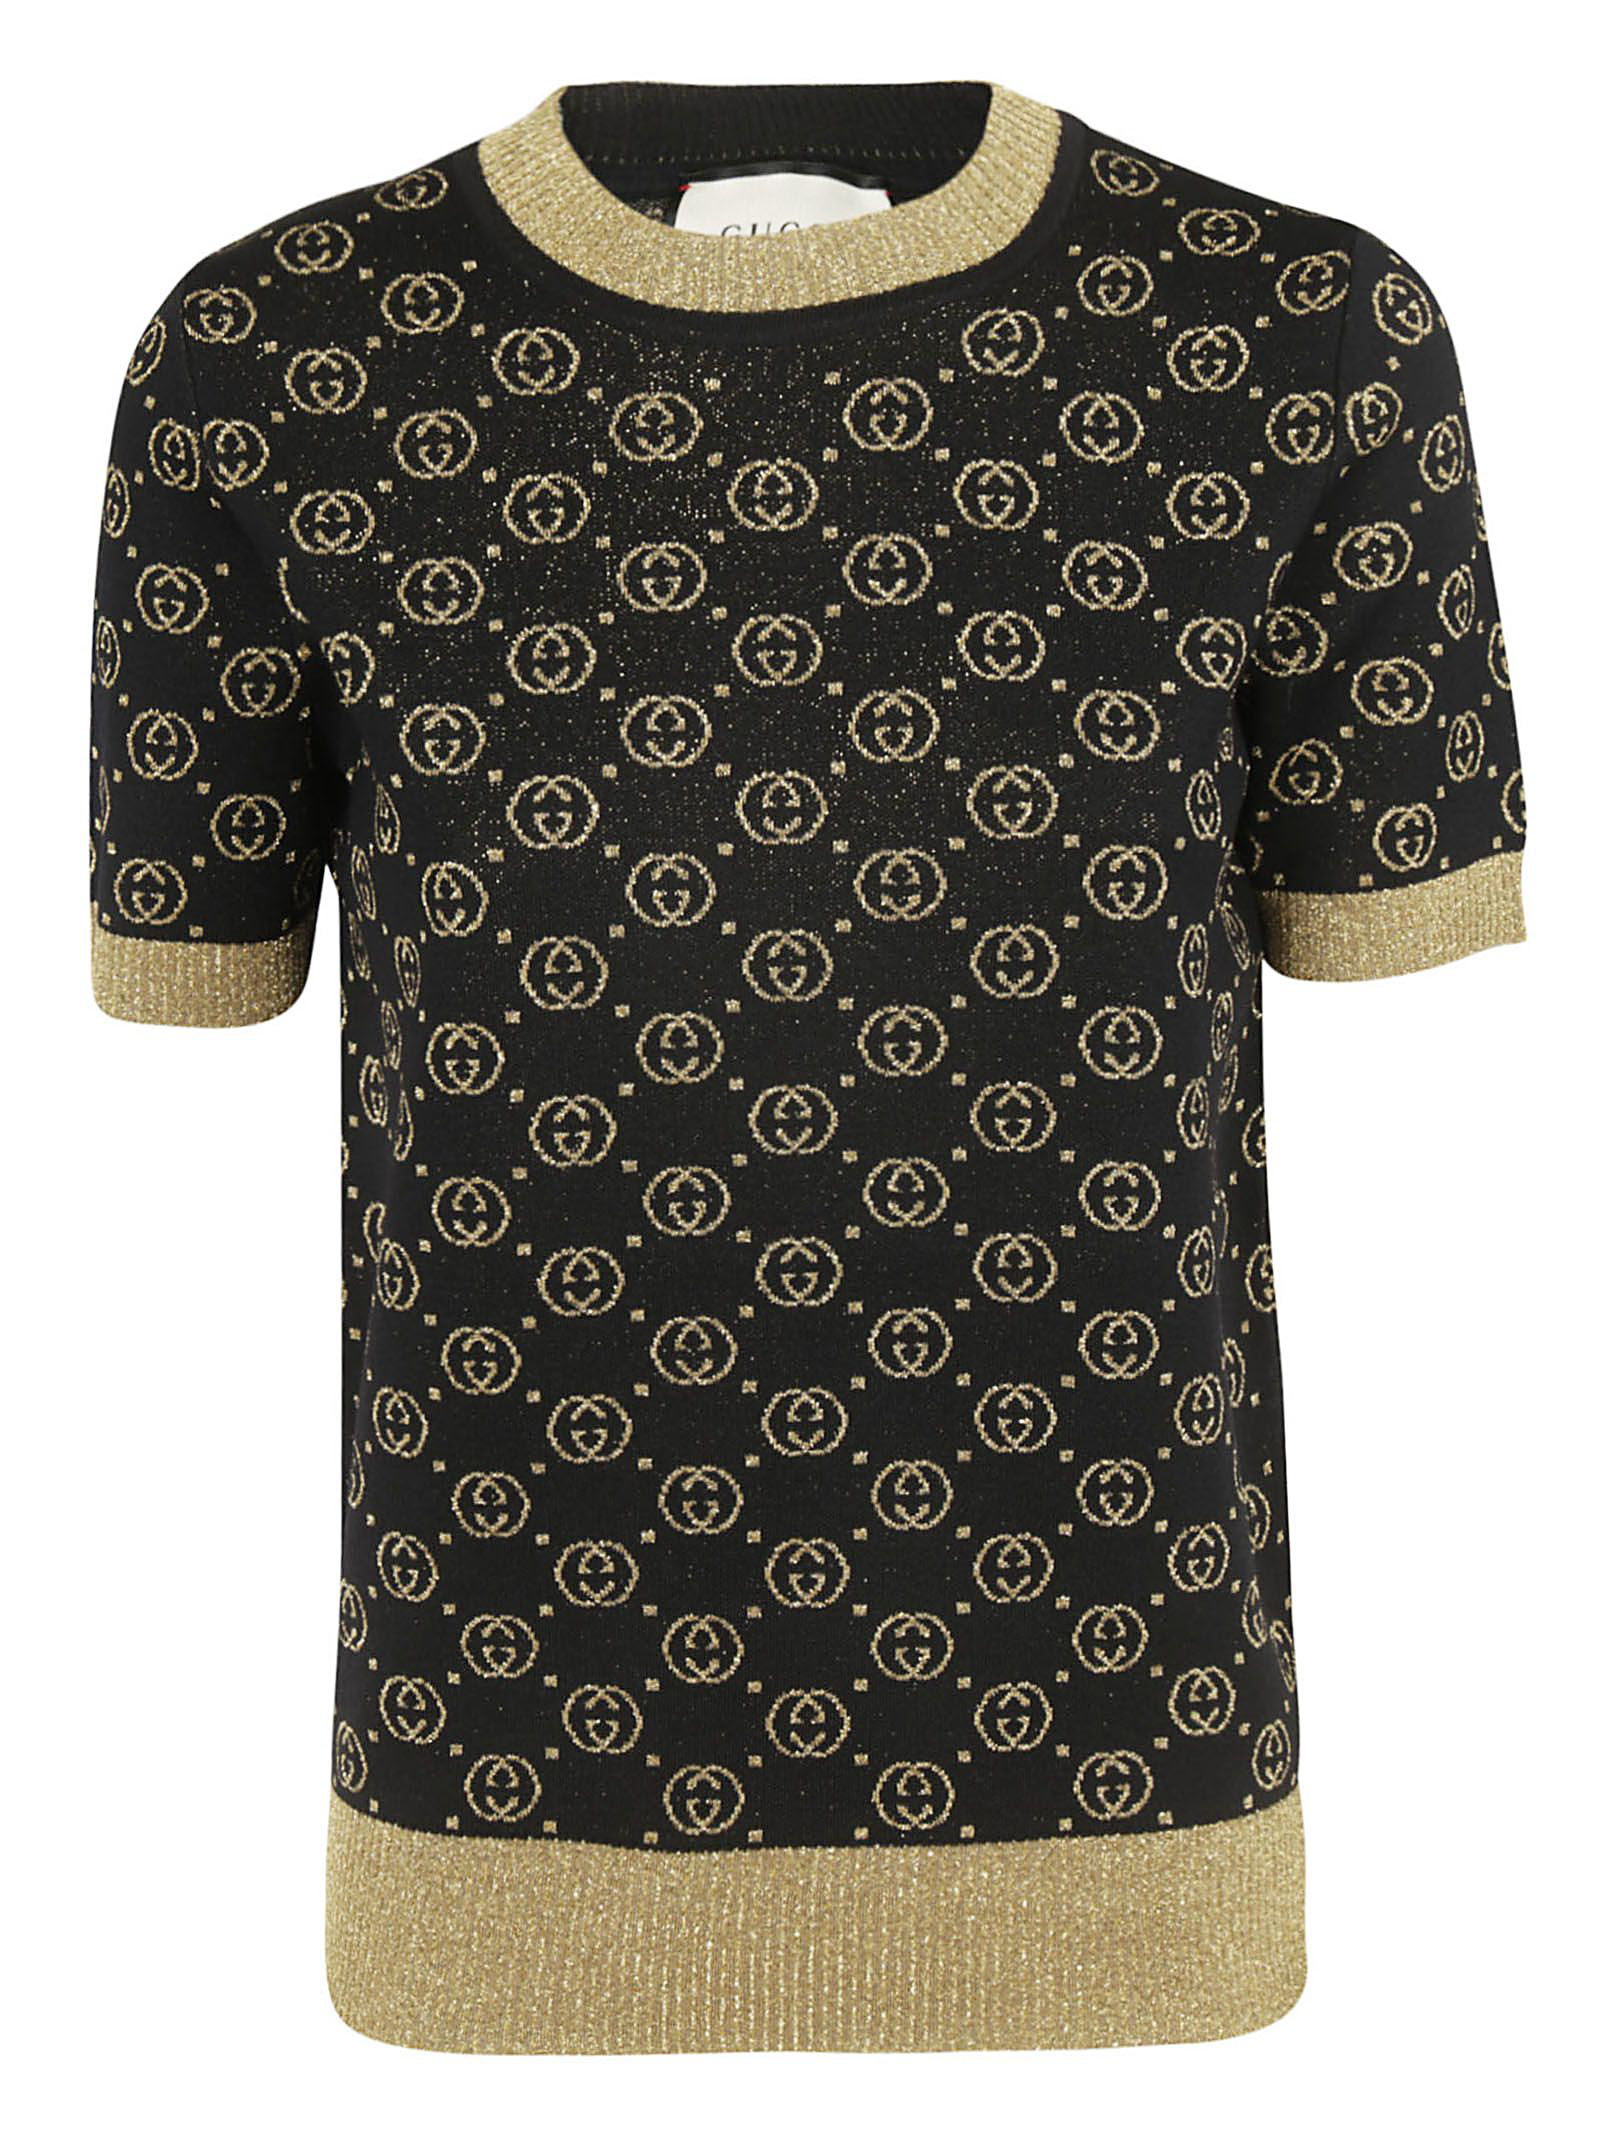 Gucci Jacquard Logo T-shirt In Black 